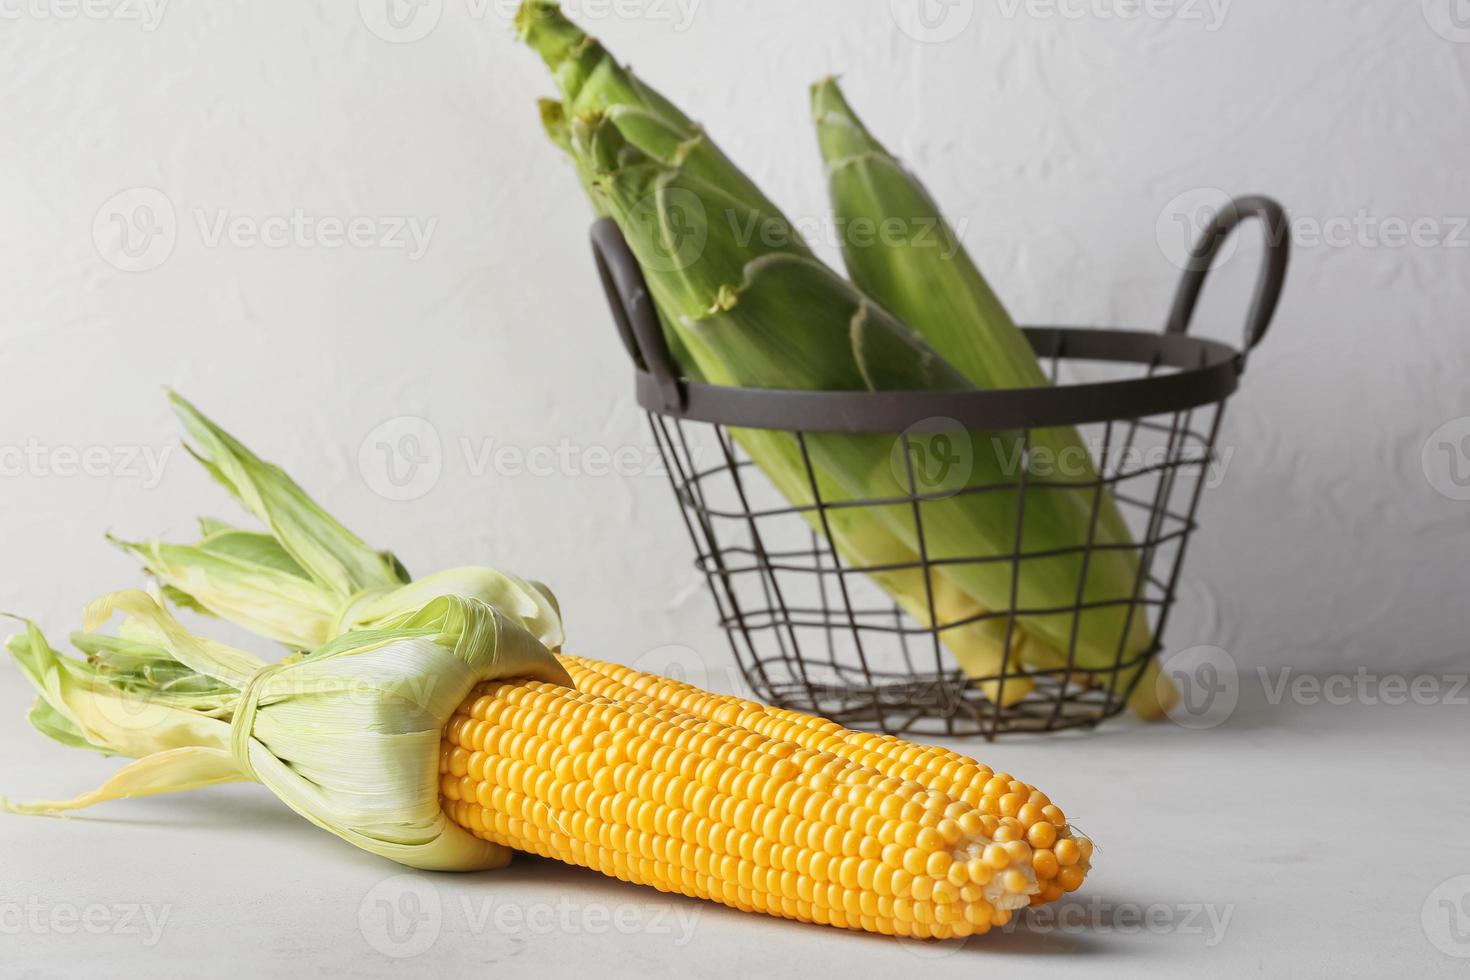 pannocchie di mais fresche su sfondo chiaro foto